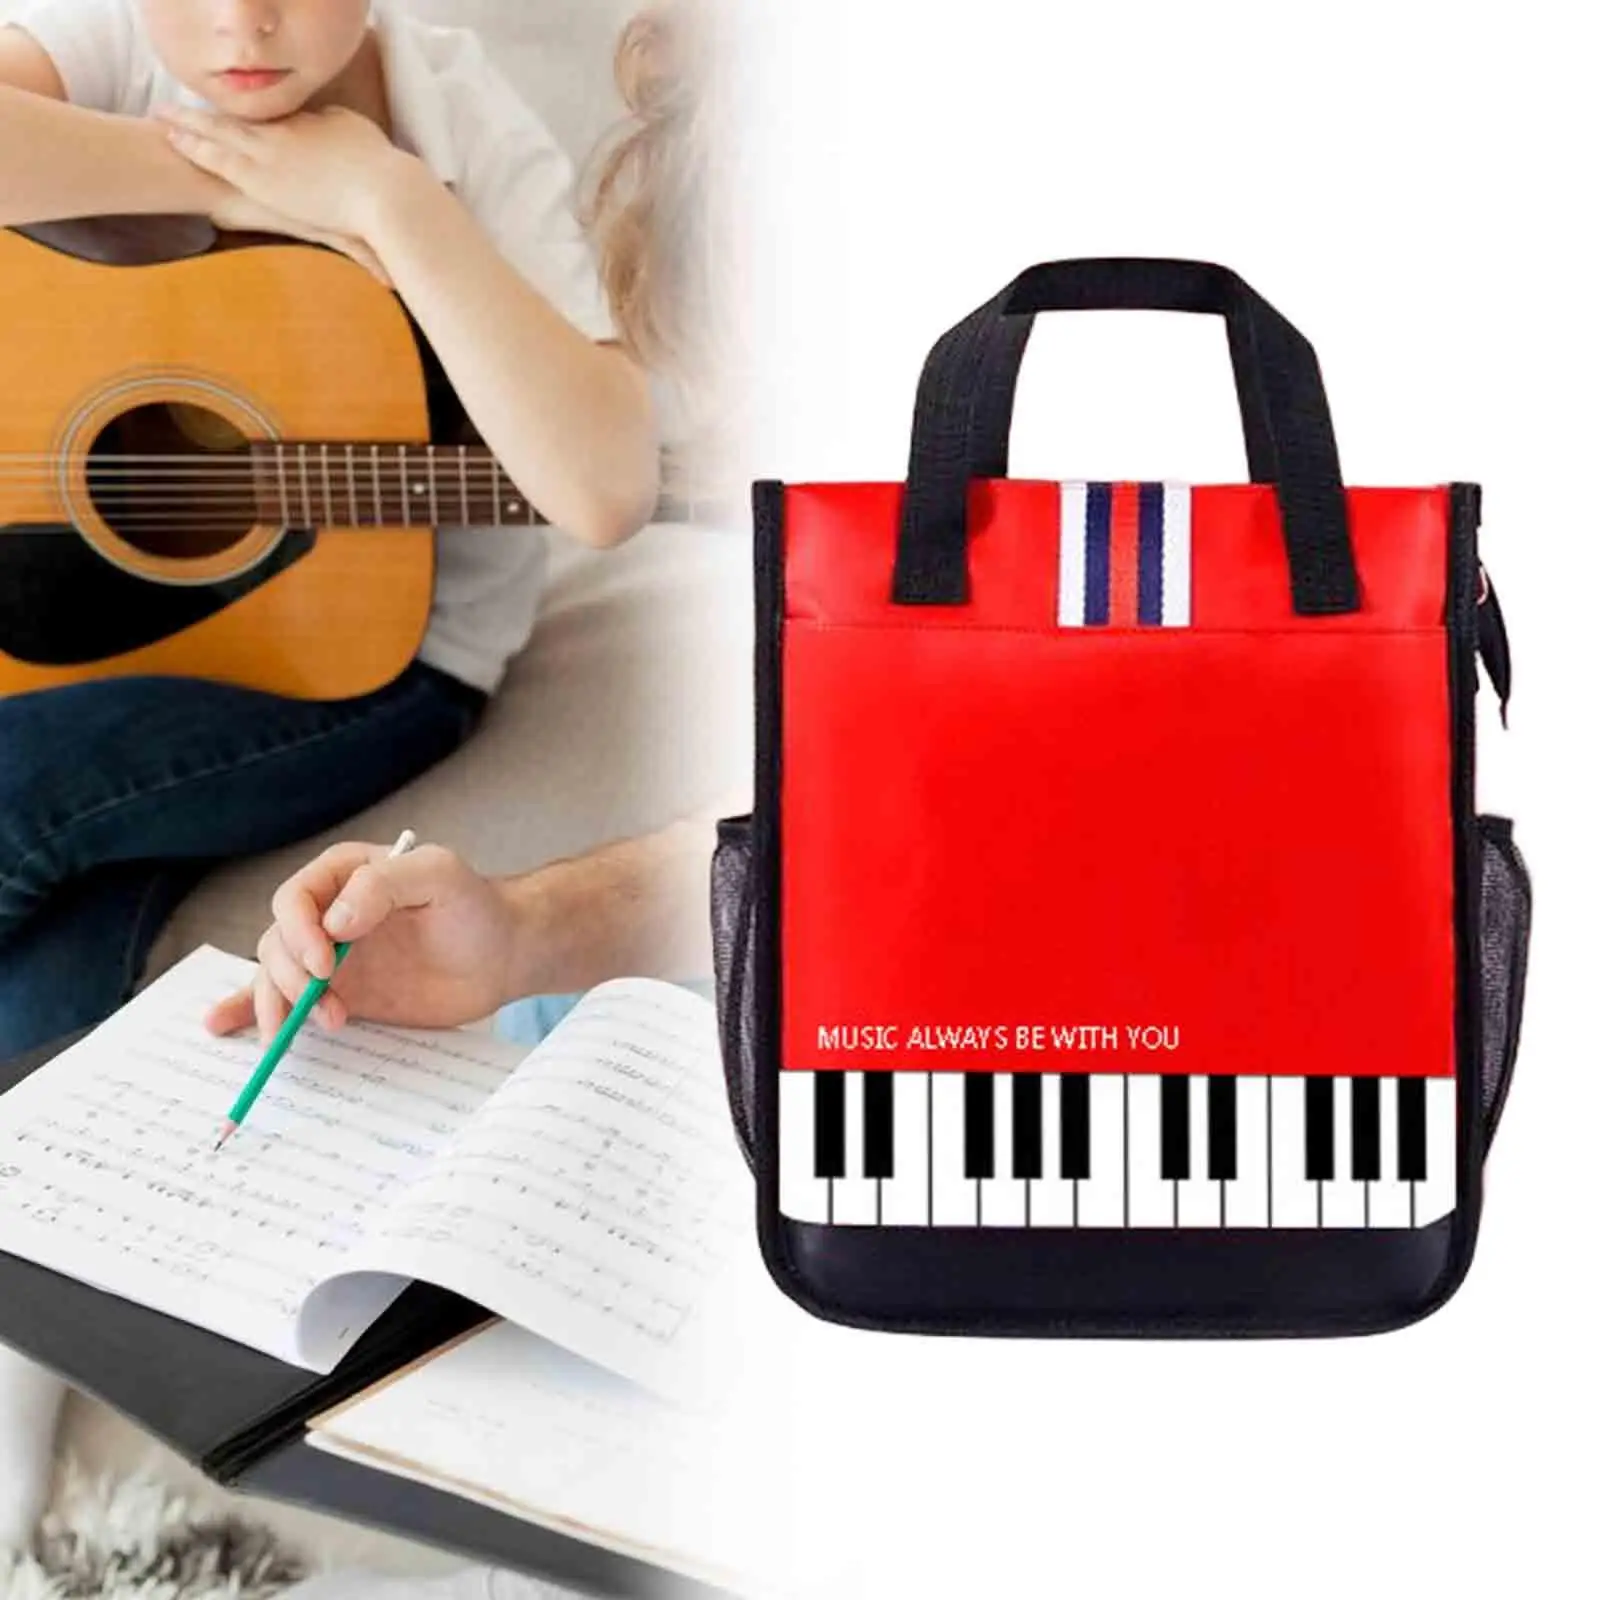 

Сумка для пианино и книг, сумка из органической ткани, сумка через плечо, сумка для занятий пианино для женщин, друзей, учителей, музыки, подарки для детей